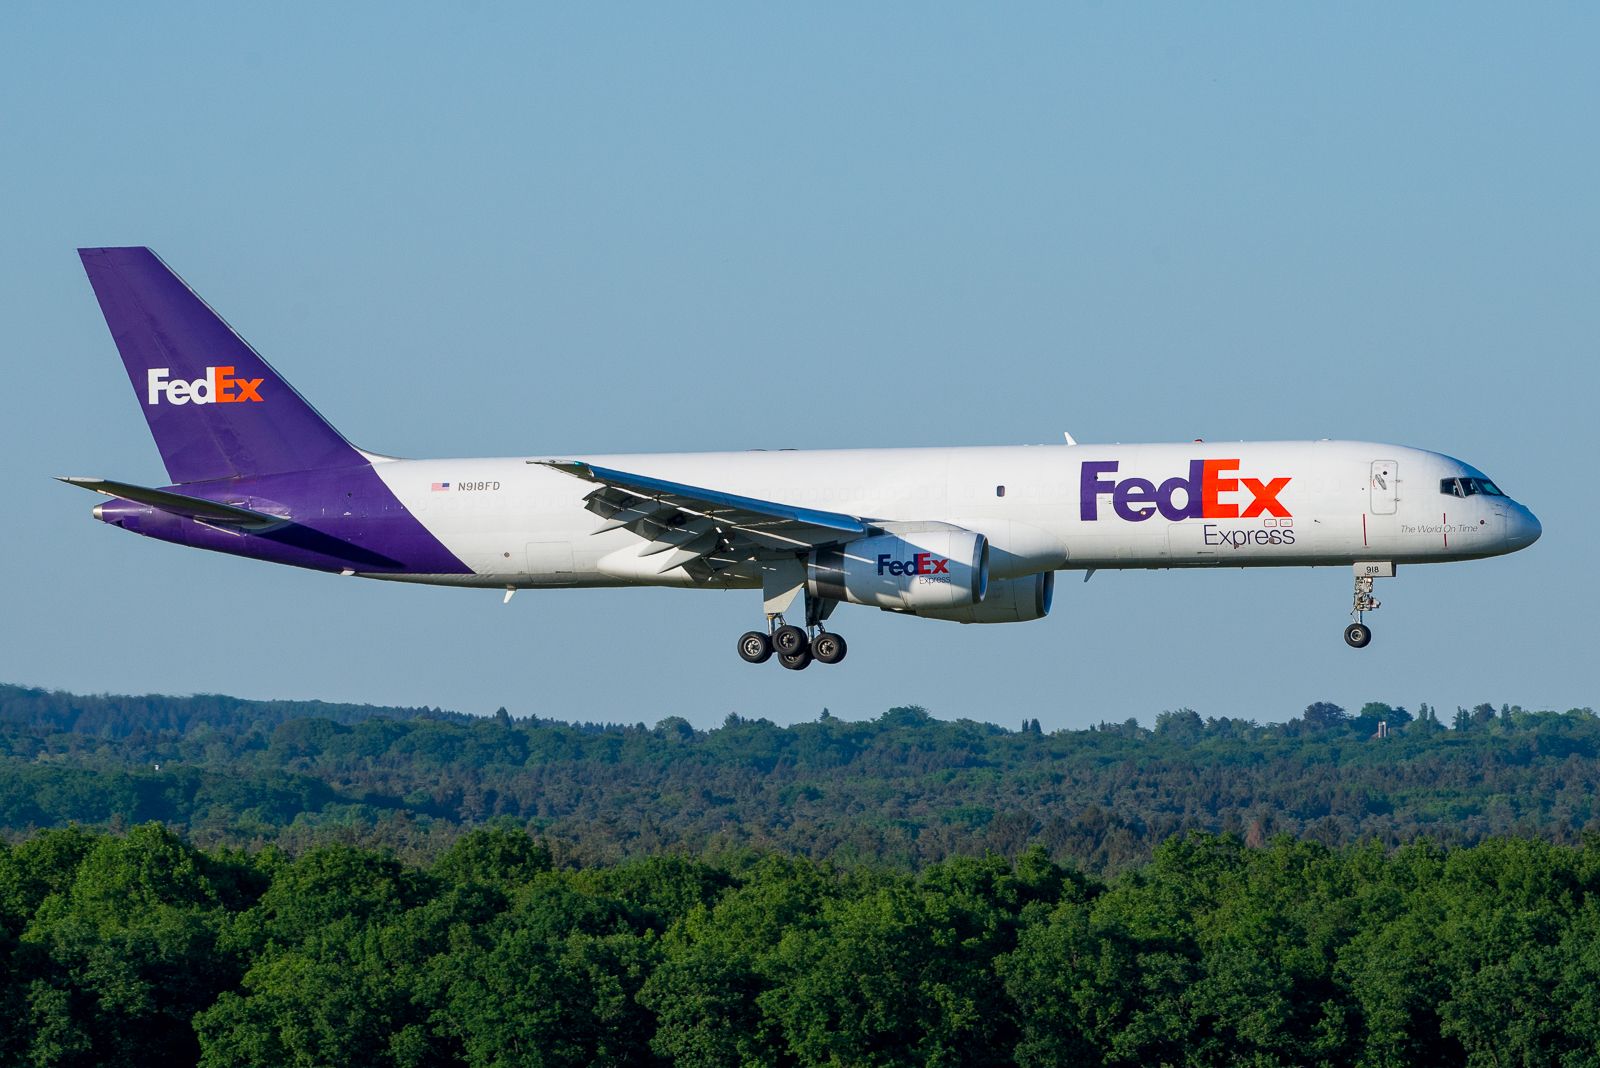 FedEx Boeing 757-200F N918FD